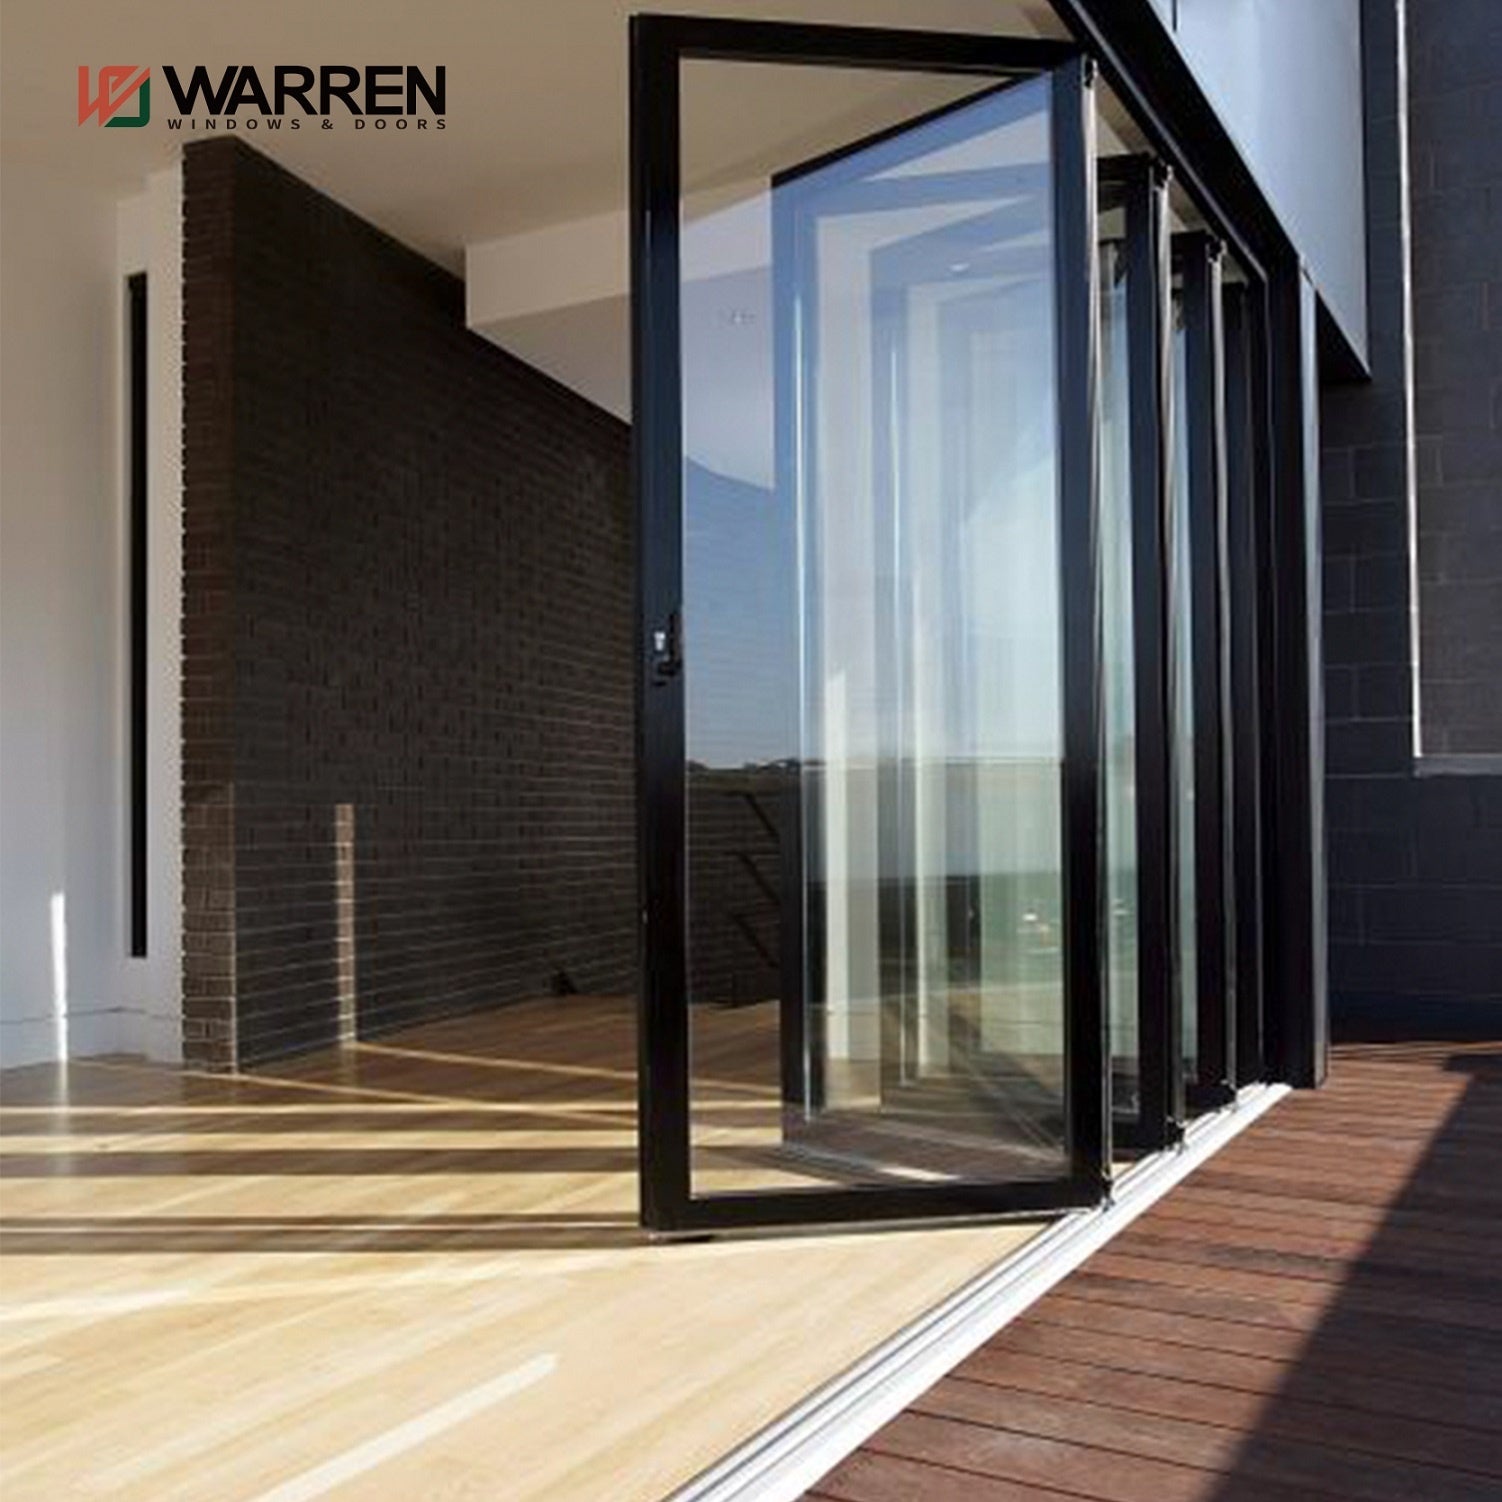 Warren premium vertical bifold doors aluminum folding doors double glass door